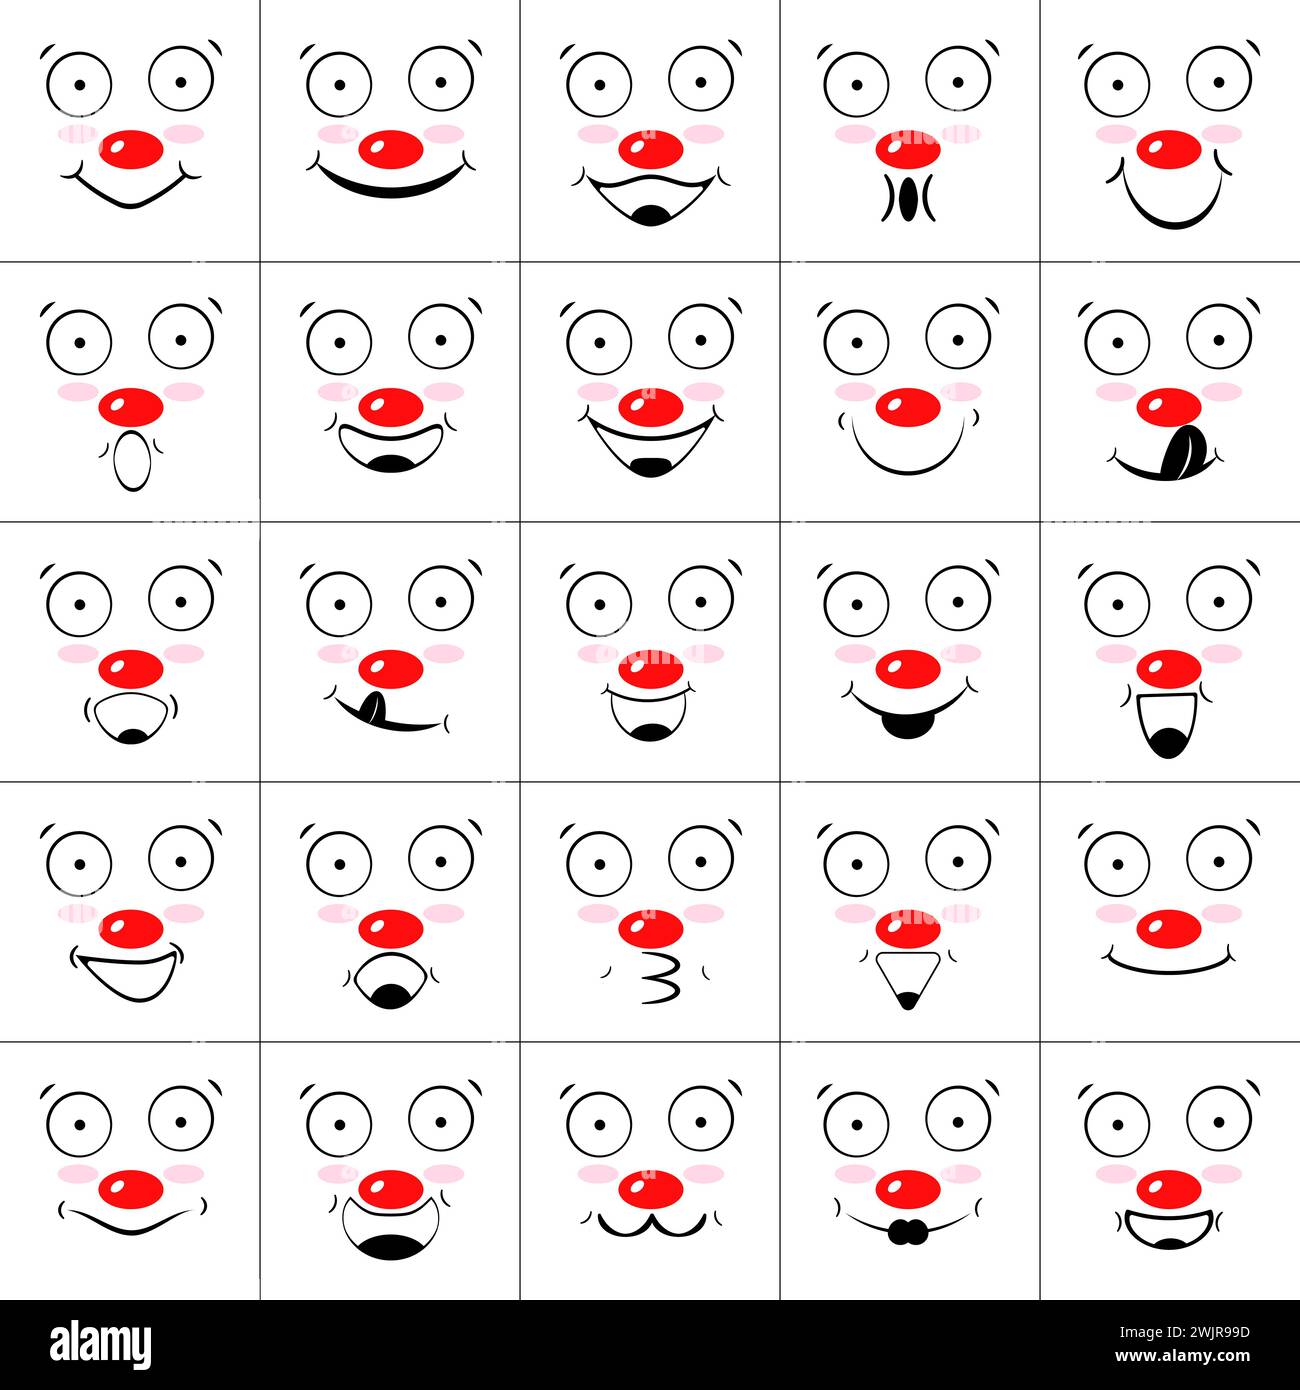 Ensemble de visages de clowns avec des sourires, des rires et des nez rouges. Collection d'émoticônes et emoji. Contour, illustrations vectorielles isolées, icônes. Illustration de Vecteur